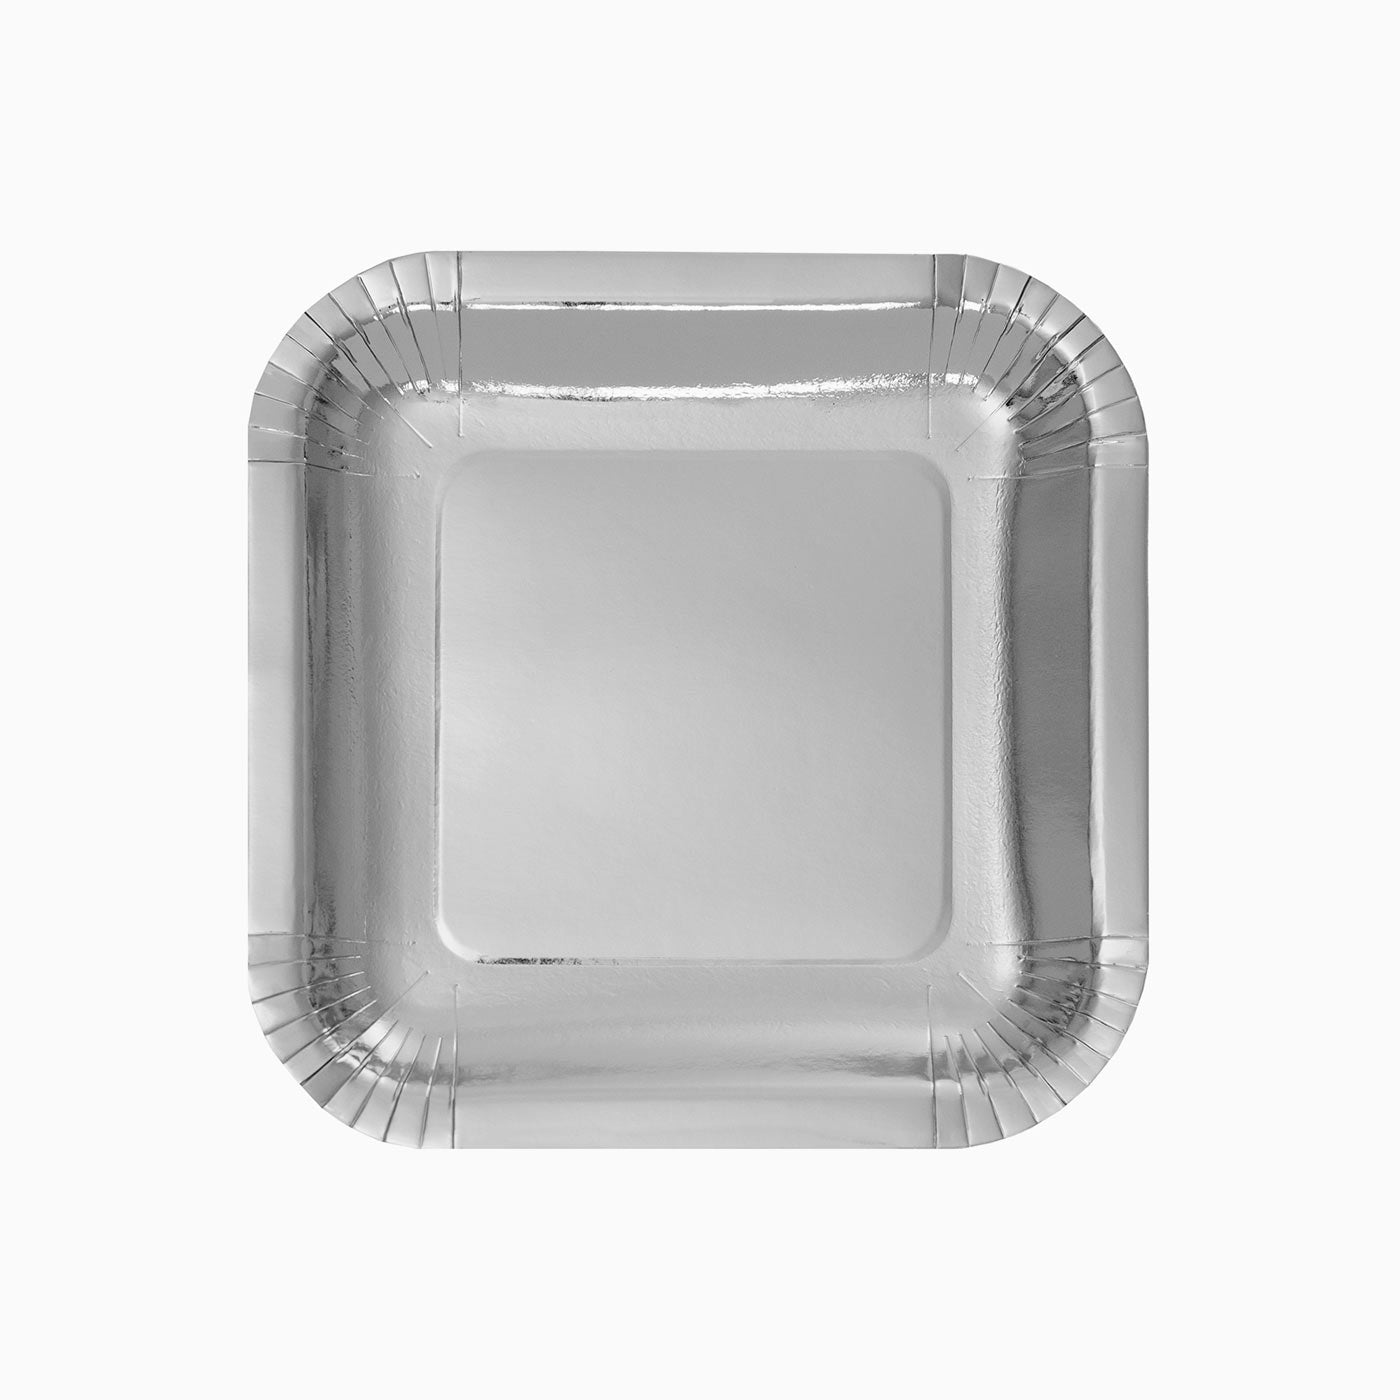 Placa de caixa lisa metalizada 18 x 18 cm de prata